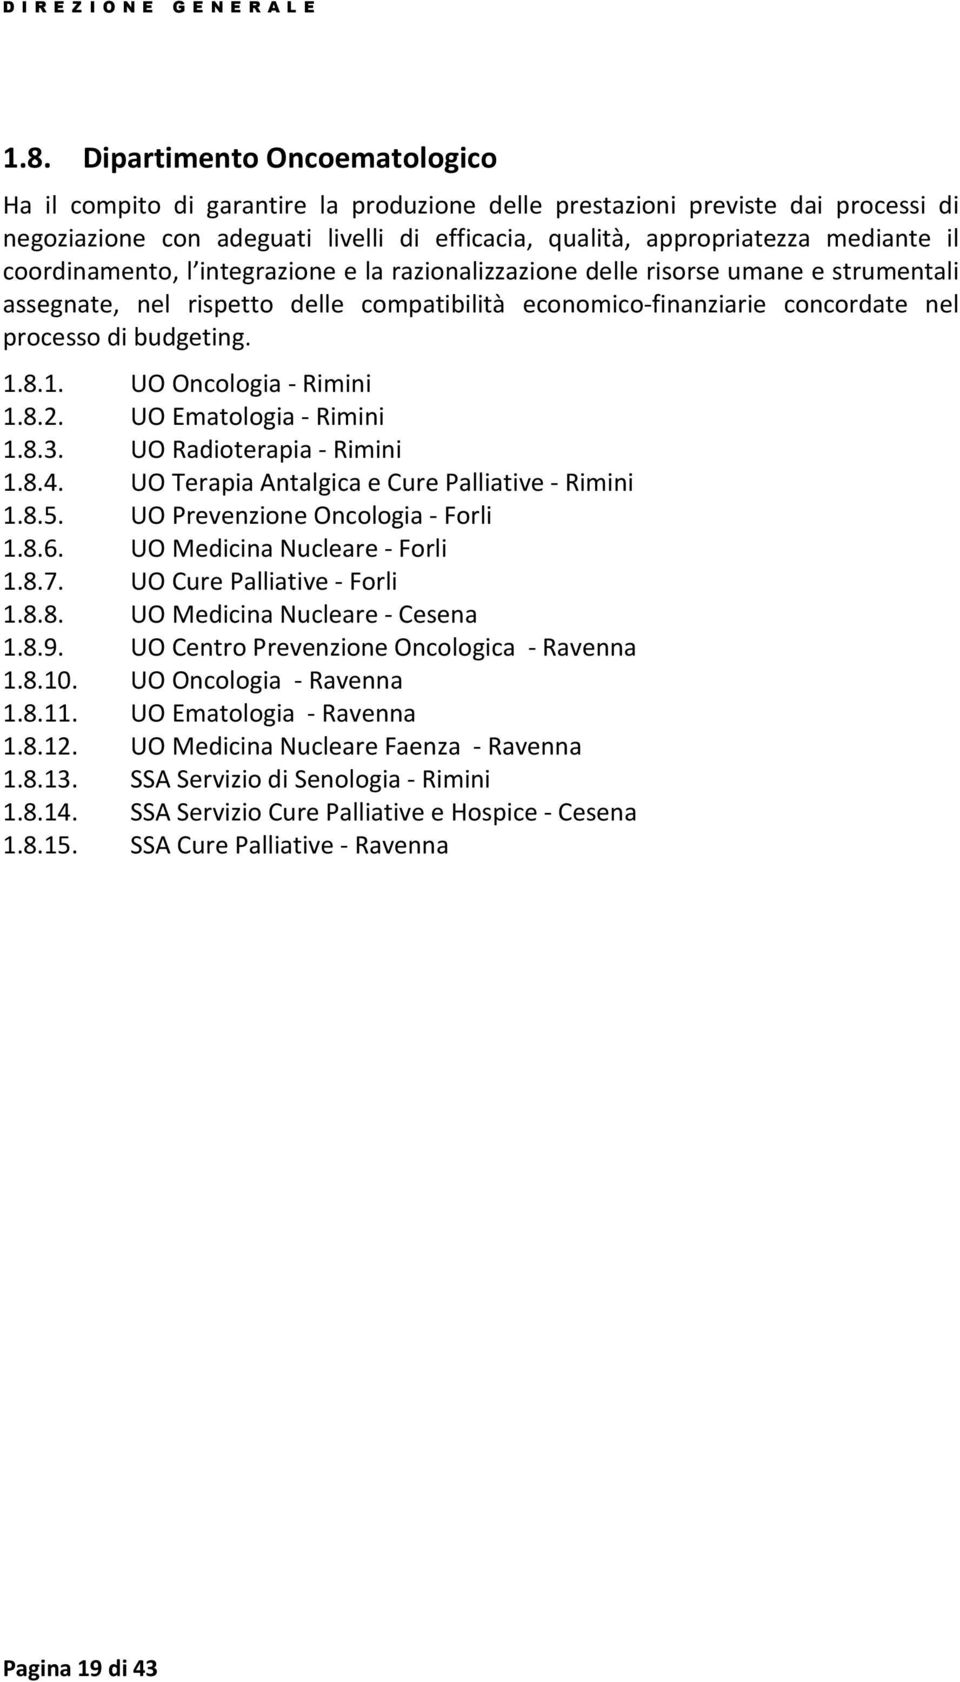 8.1. UO Oncologia - Rimini 1.8.2. UO Ematologia - Rimini 1.8.3. UO Radioterapia - Rimini 1.8.4. UO Terapia Antalgica e Cure Palliative - Rimini 1.8.5. UO Prevenzione Oncologia - Forli 1.8.6.